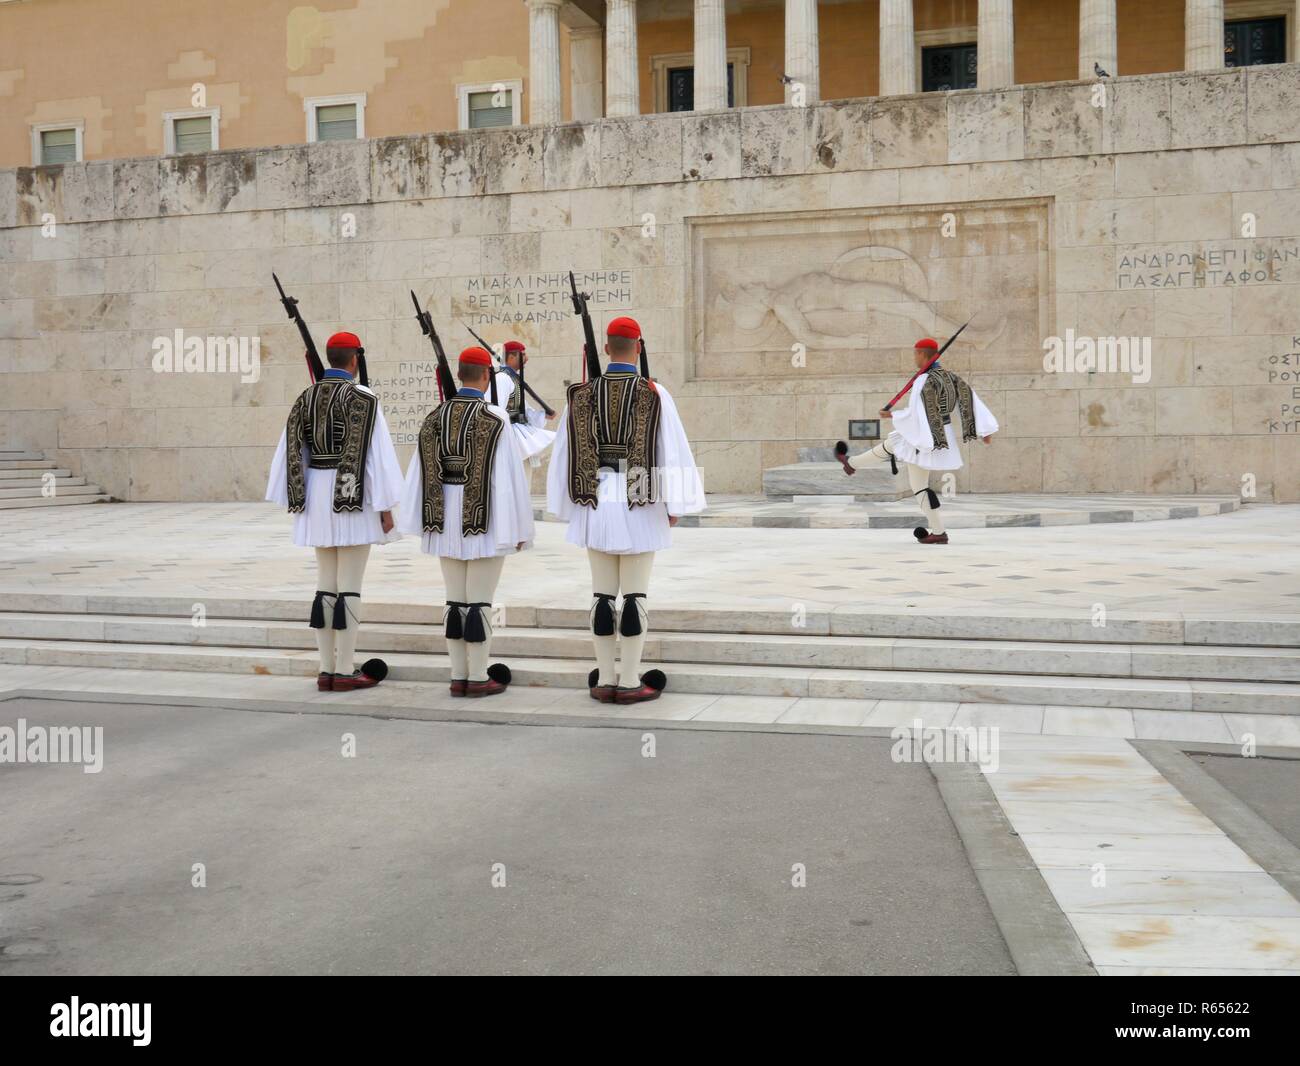 Athen, Griechenland - 26. September 2016: Wachablösung Zeremonie vor dem Parlamentsgebäude auf dem Syntagma-platz durch Evzones oder Evzonoi Soldaten Stockfoto